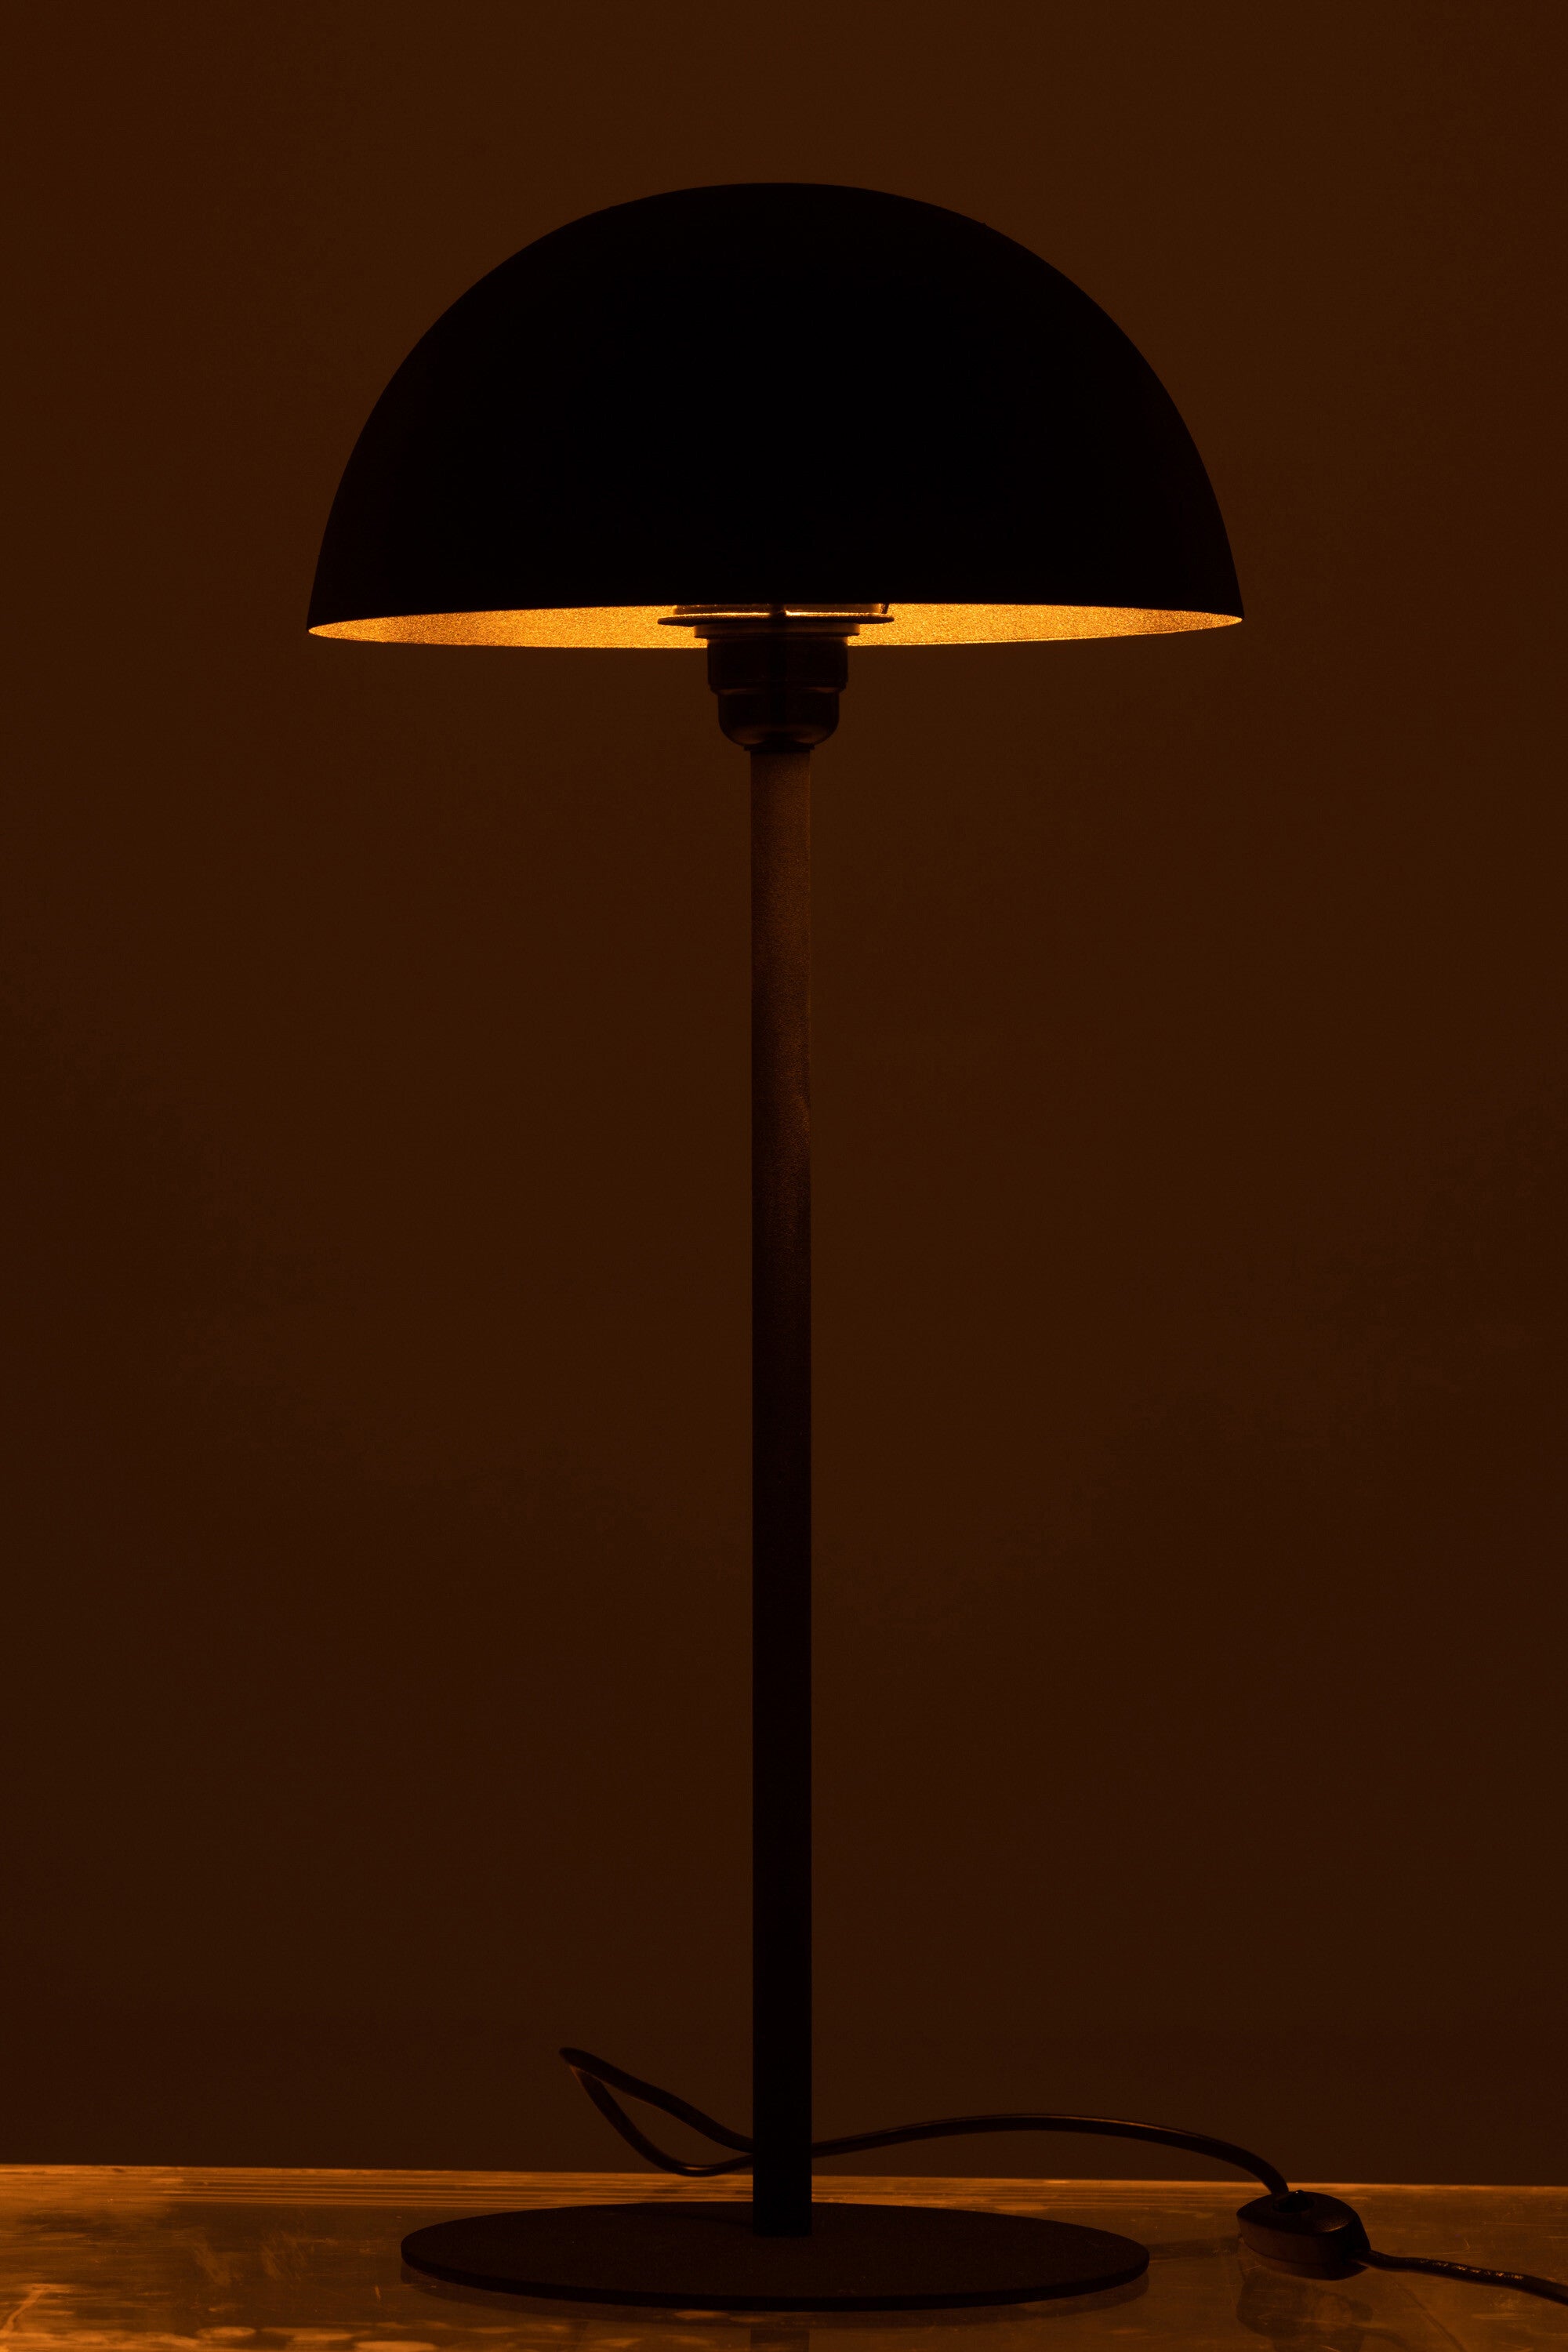 Black Mambo lamp